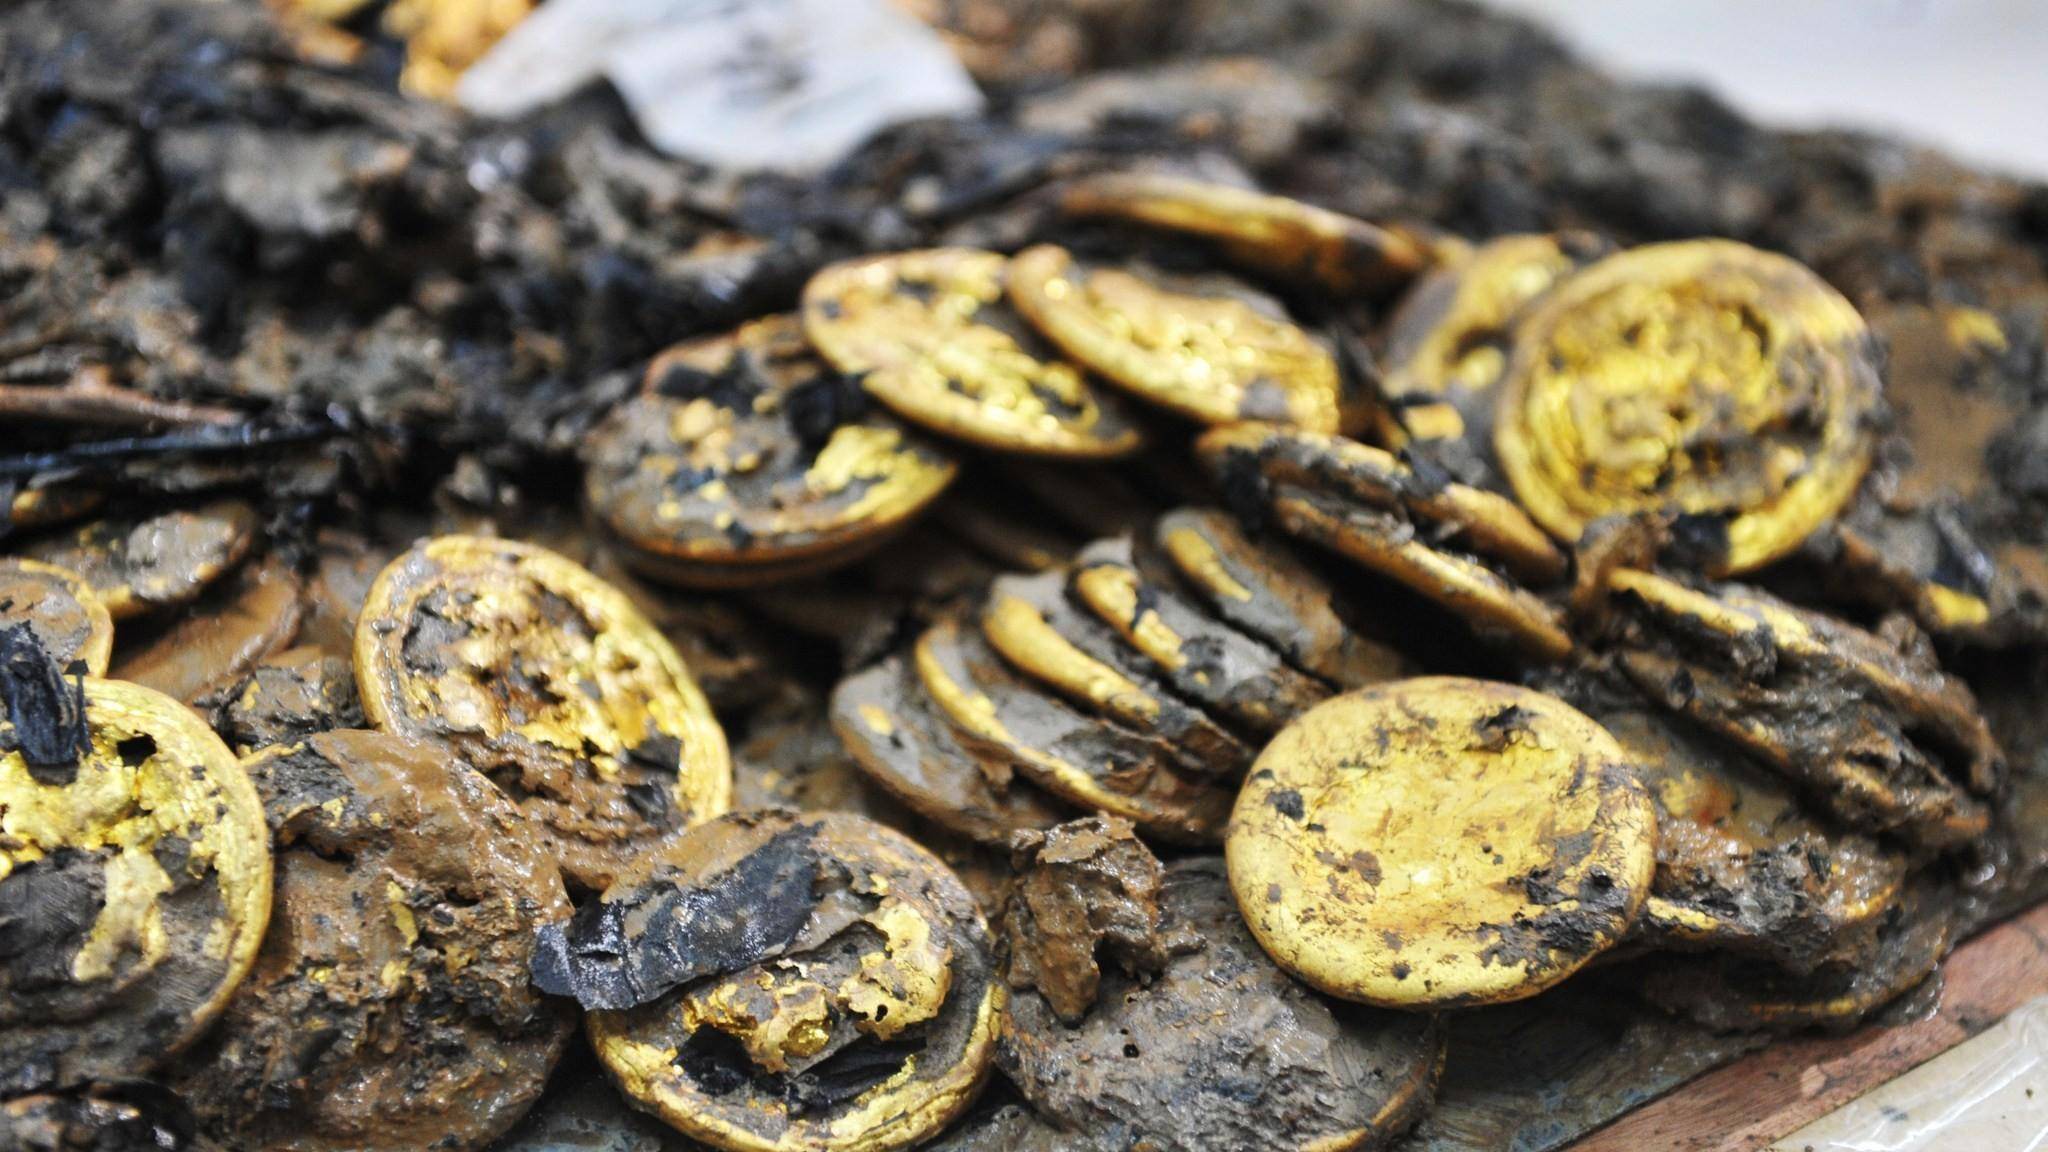 海昏侯刘贺墓出土的黄金文物:墓室内一片金黄,每枚金饼重达半斤